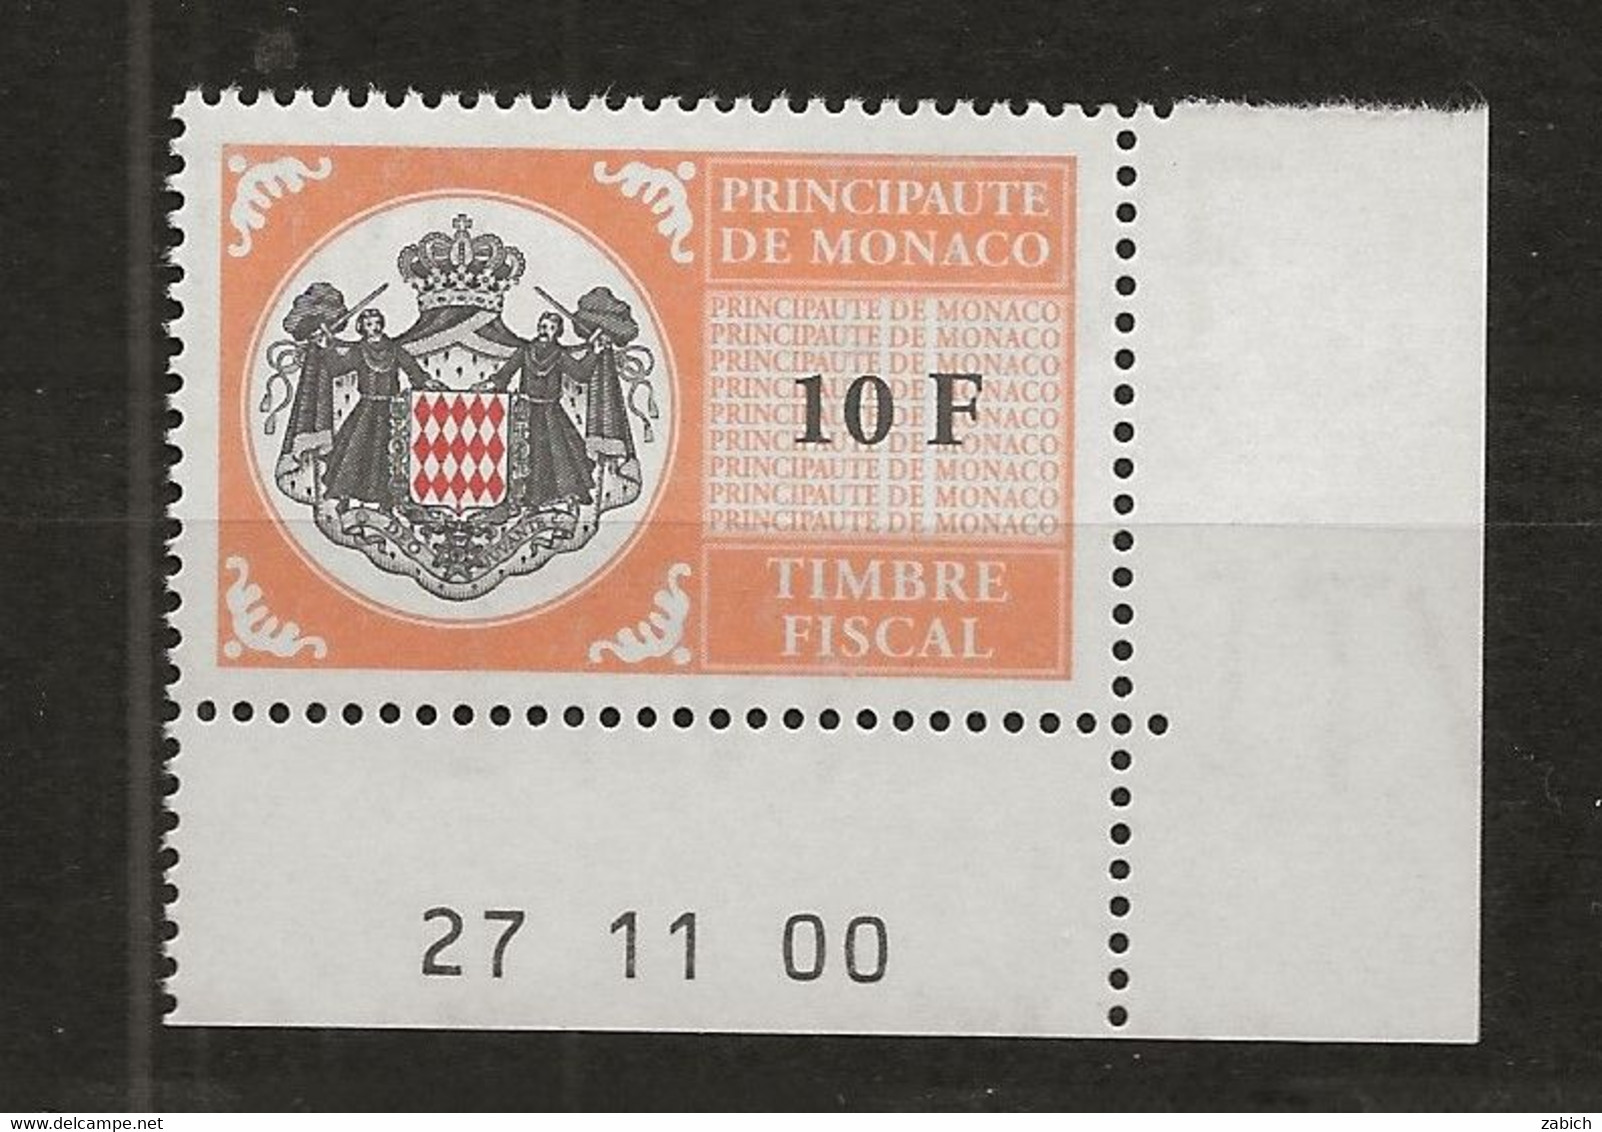 TIMBRES FISCAUX DE MONACO SERIE UNIFIEE N°102 10F Orange  Coin Daté Du 27 11 00 Neuf Gomme Mnh (**) - Fiscaux